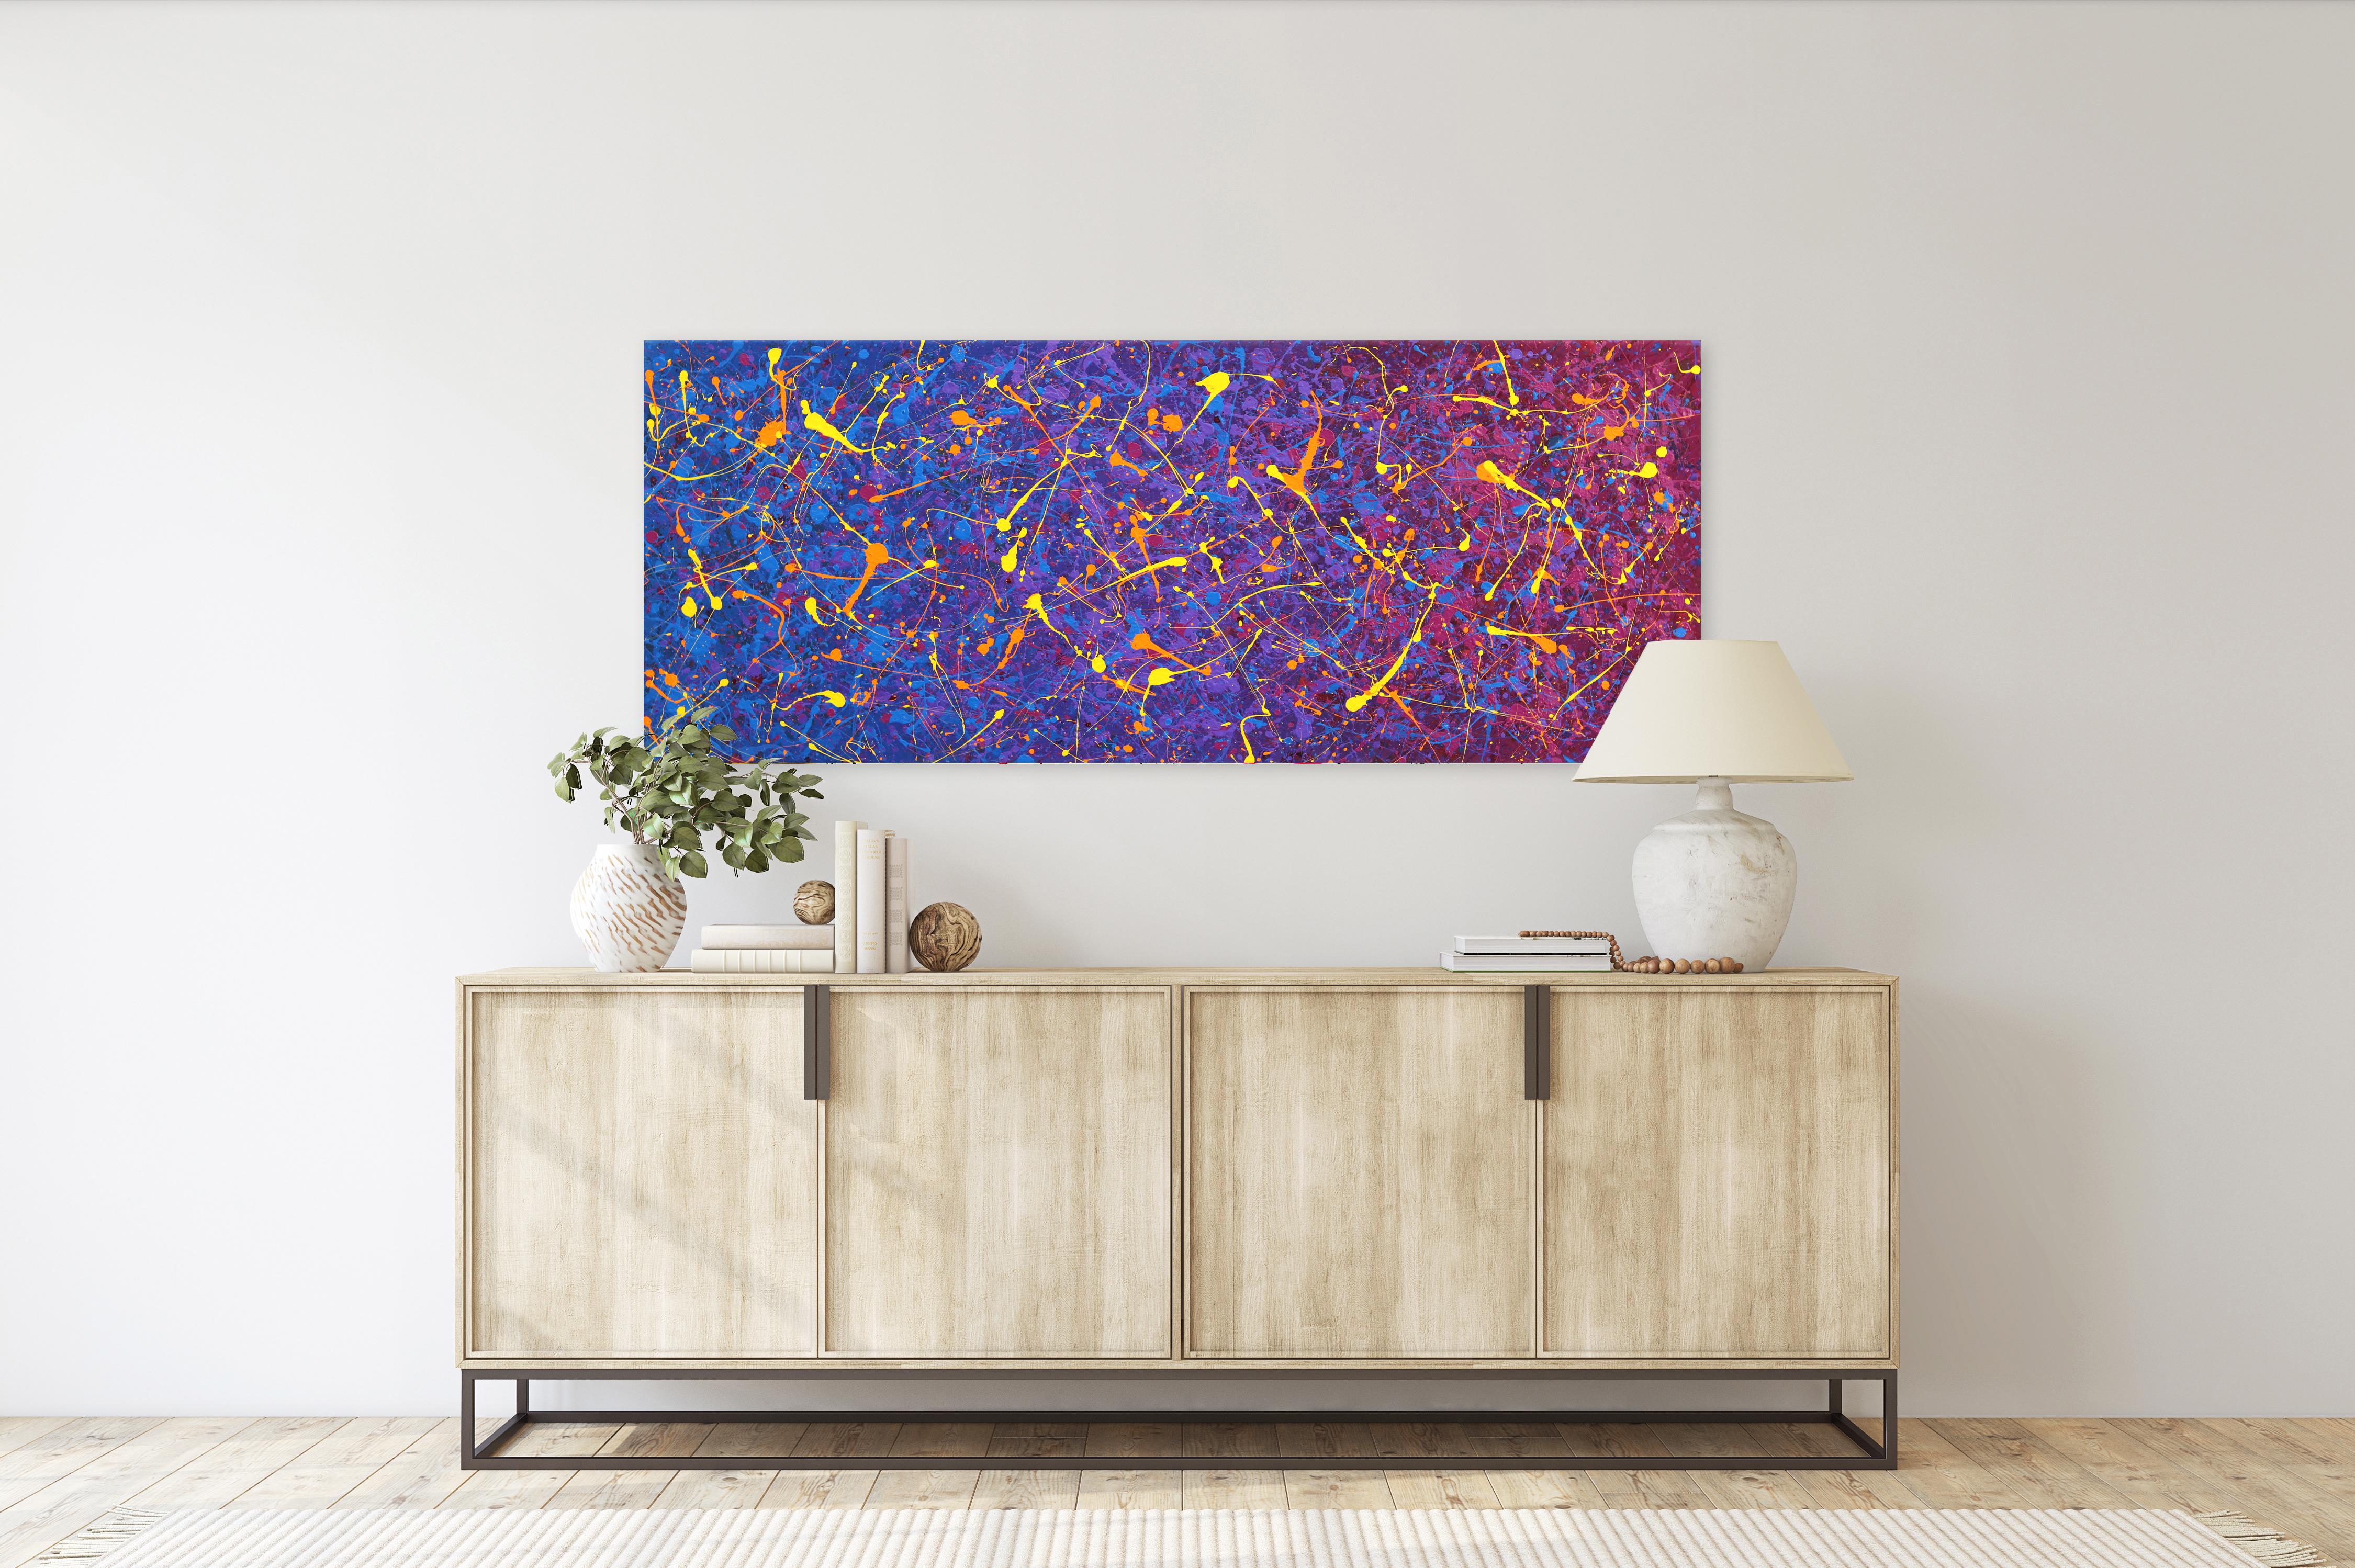 Meteor Shower – lebhaftes, farbenfrohes, farbenfrohes Original-expressionistisches Aktionsgemälde (Abstrakter Expressionismus), Mixed Media Art, von Marc Raphael